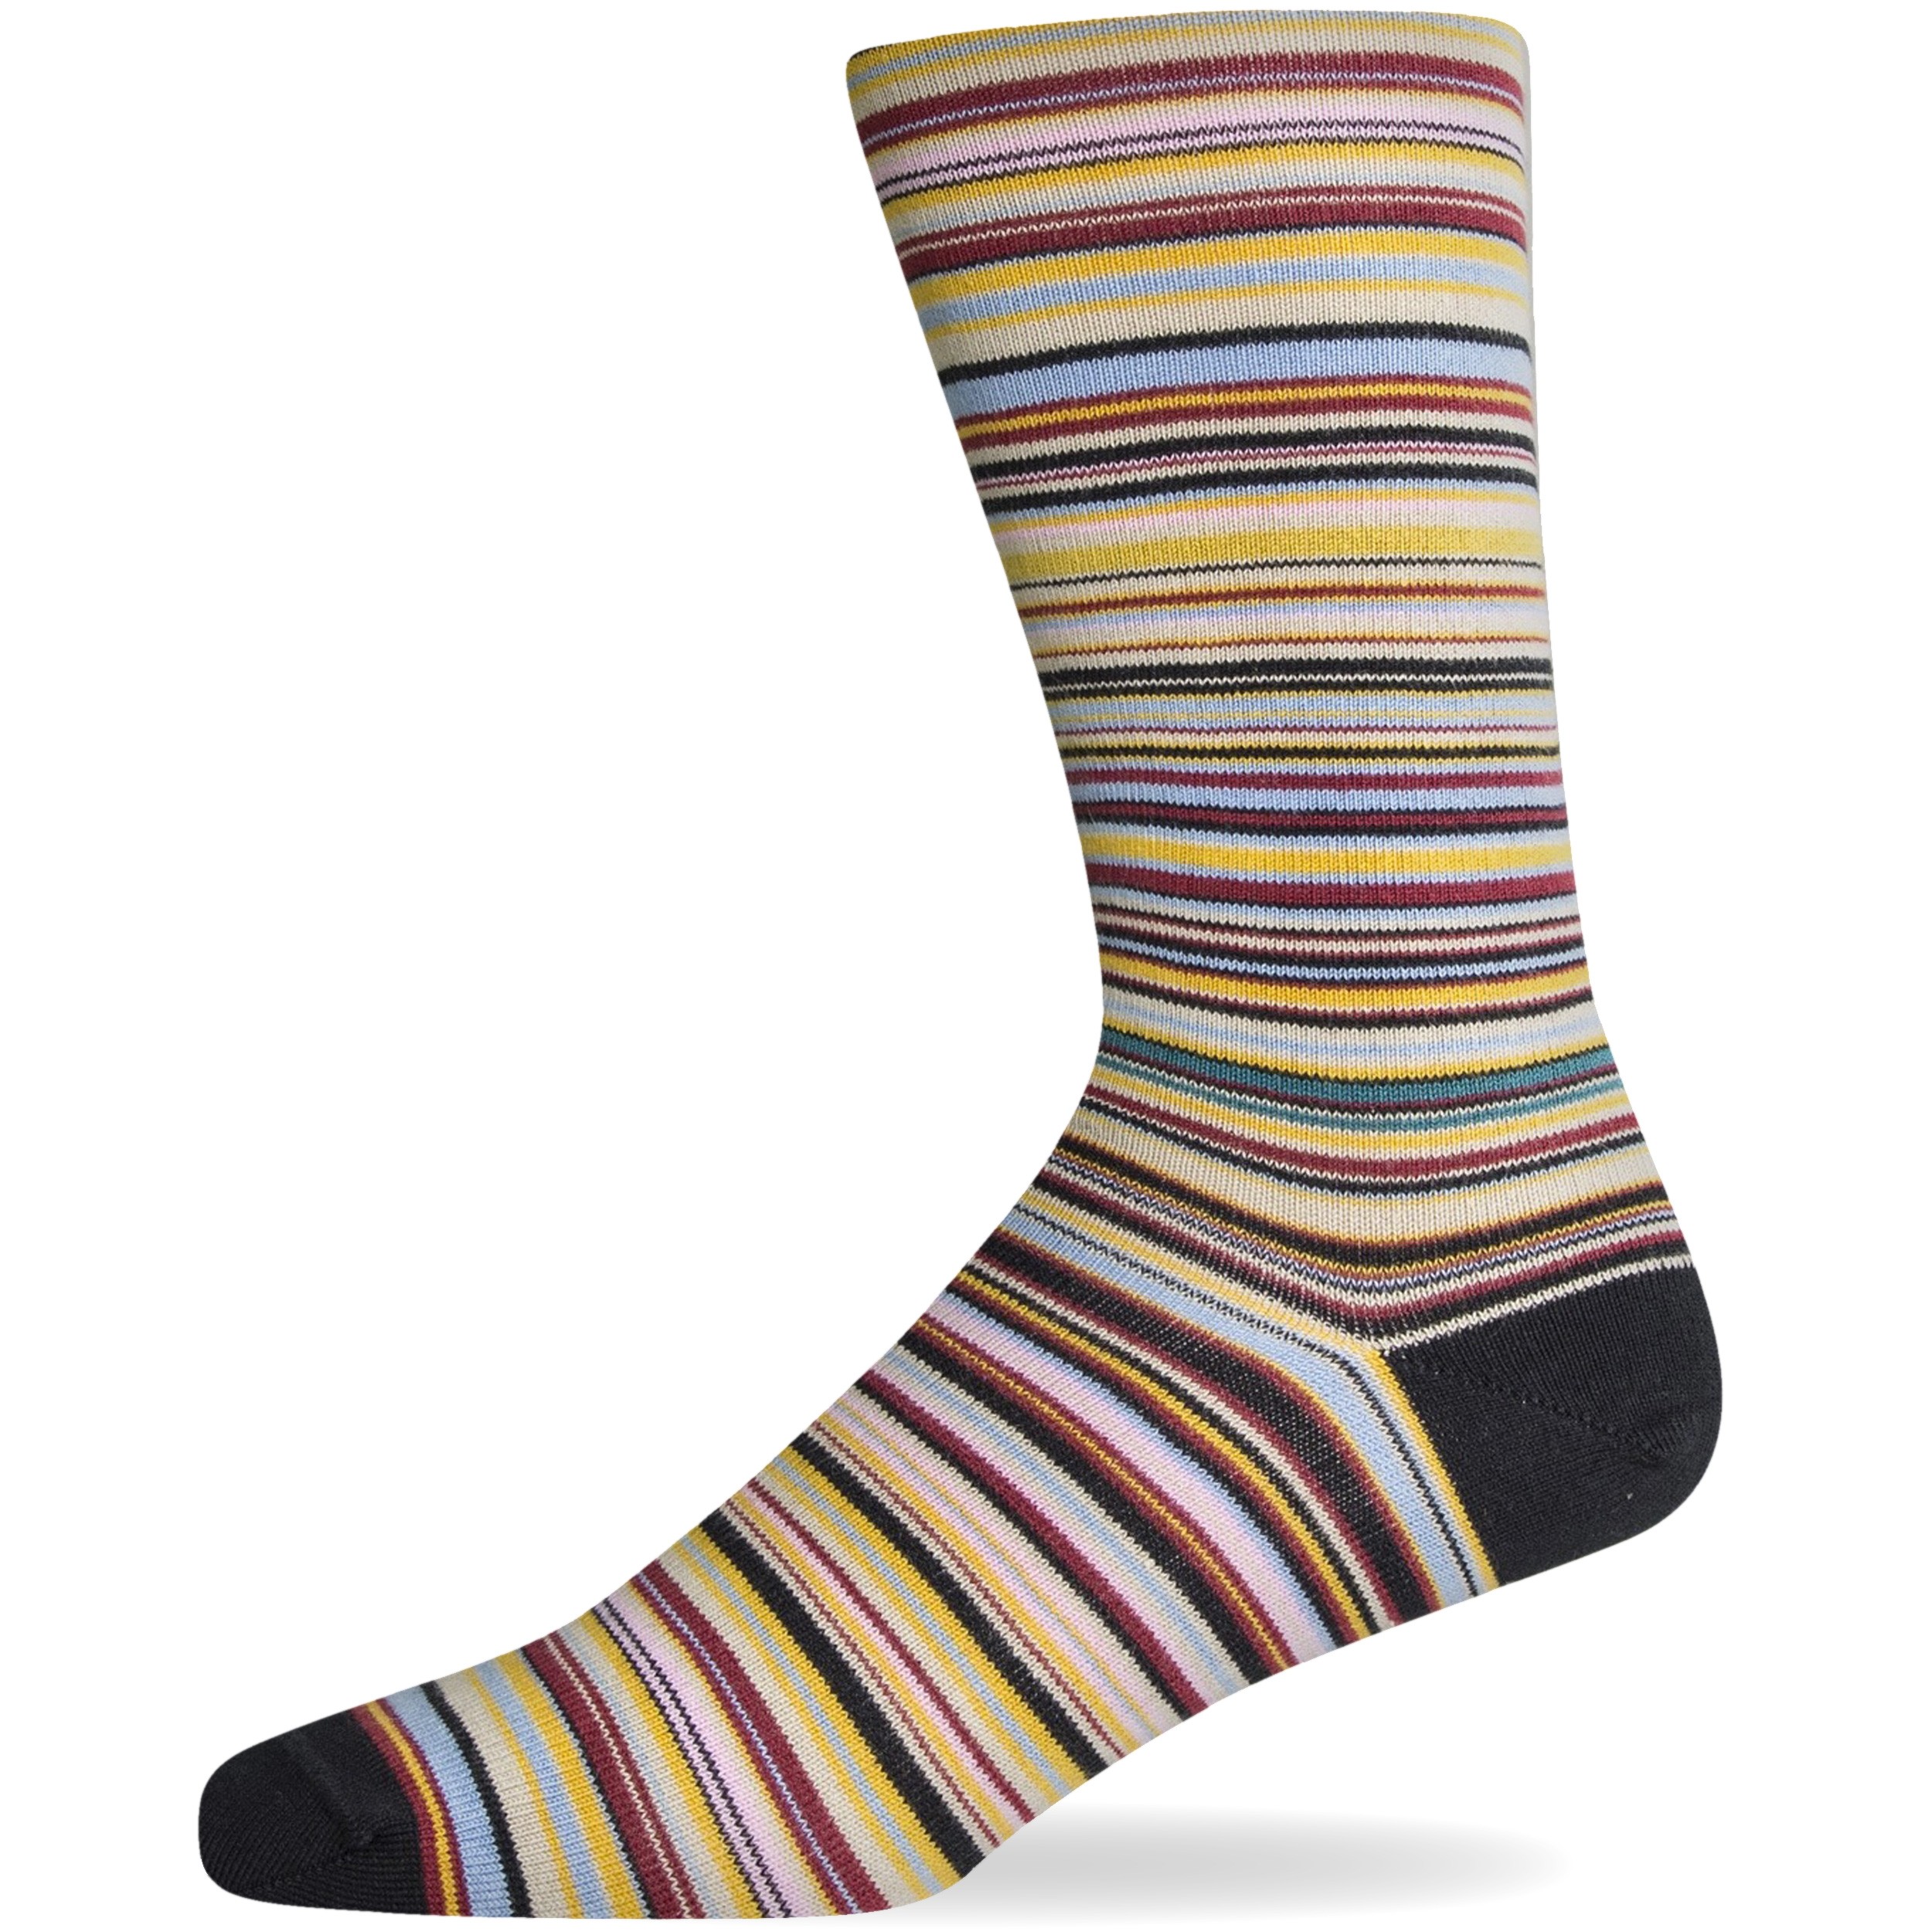 Paul Smith New Multi Stripe Socks Multi